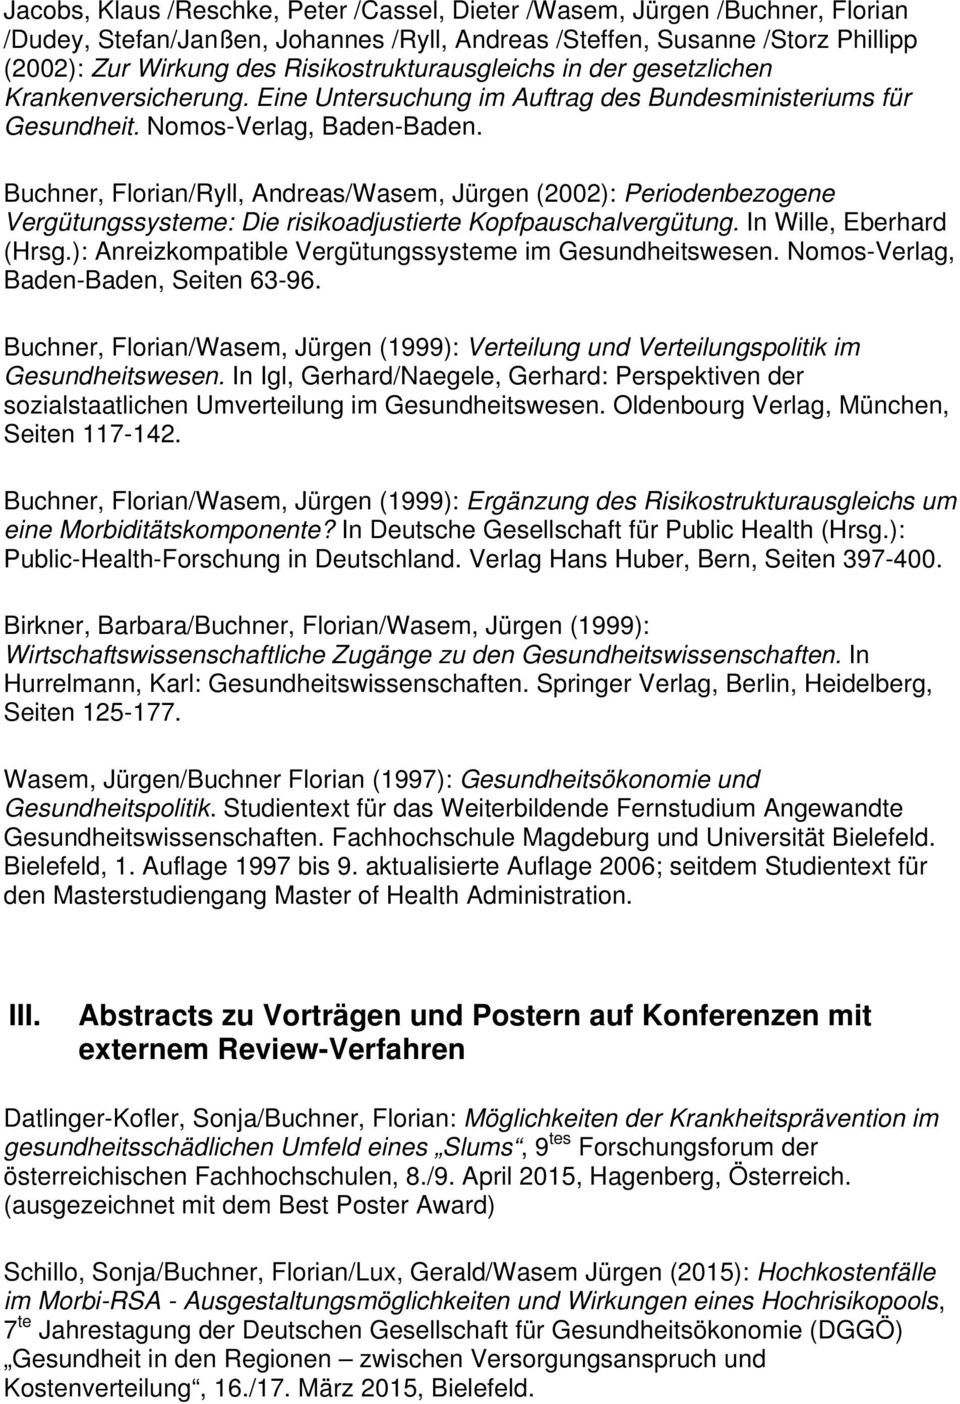 Buchner, Florian/Ryll, Andreas/Wasem, Jürgen (2002): Periodenbezogene Vergütungssysteme: Die risikoadjustierte Kopfpauschalvergütung. In Wille, Eberhard (Hrsg.